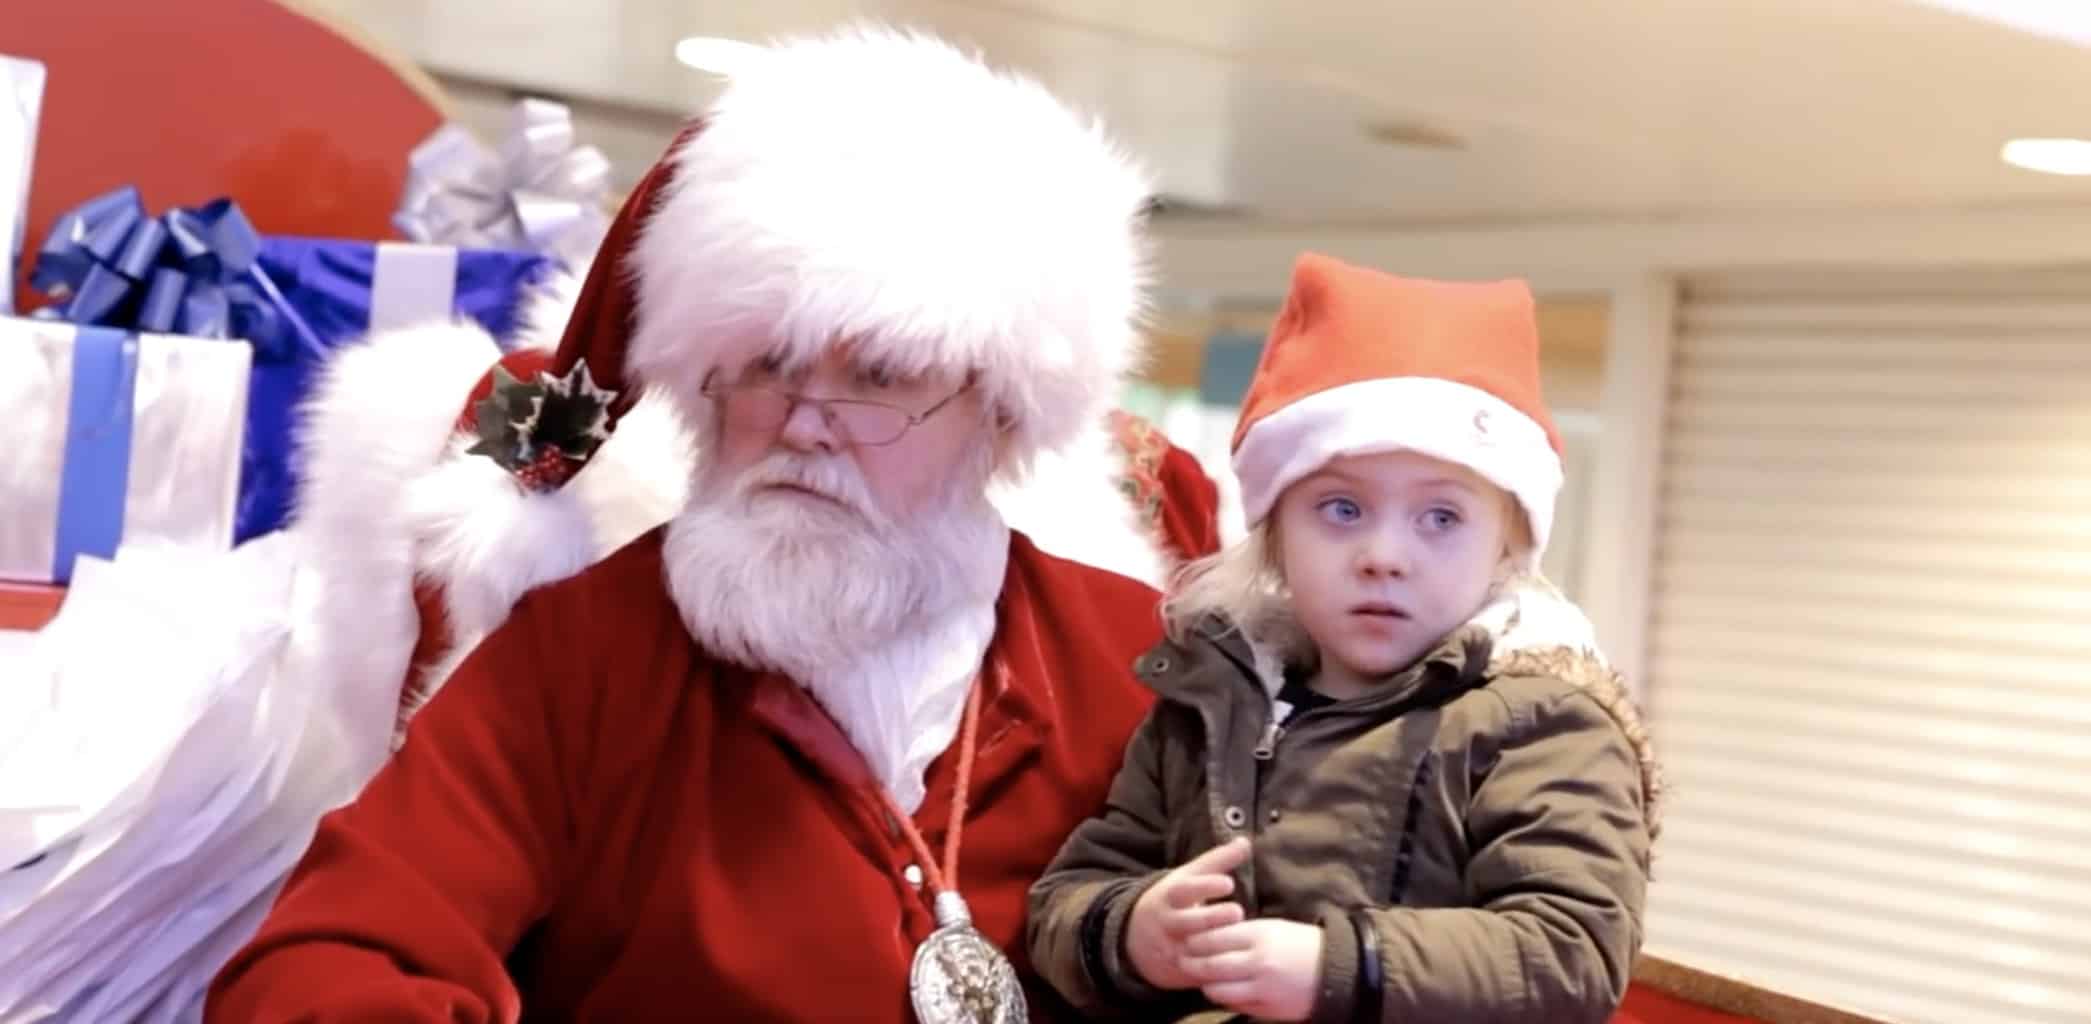 Video Babbo Natale Per Bambini.Babbo Natale Scopre Che La Piccola E Sorda Lascia Tutti In Lacrime Con La Sua Reazione